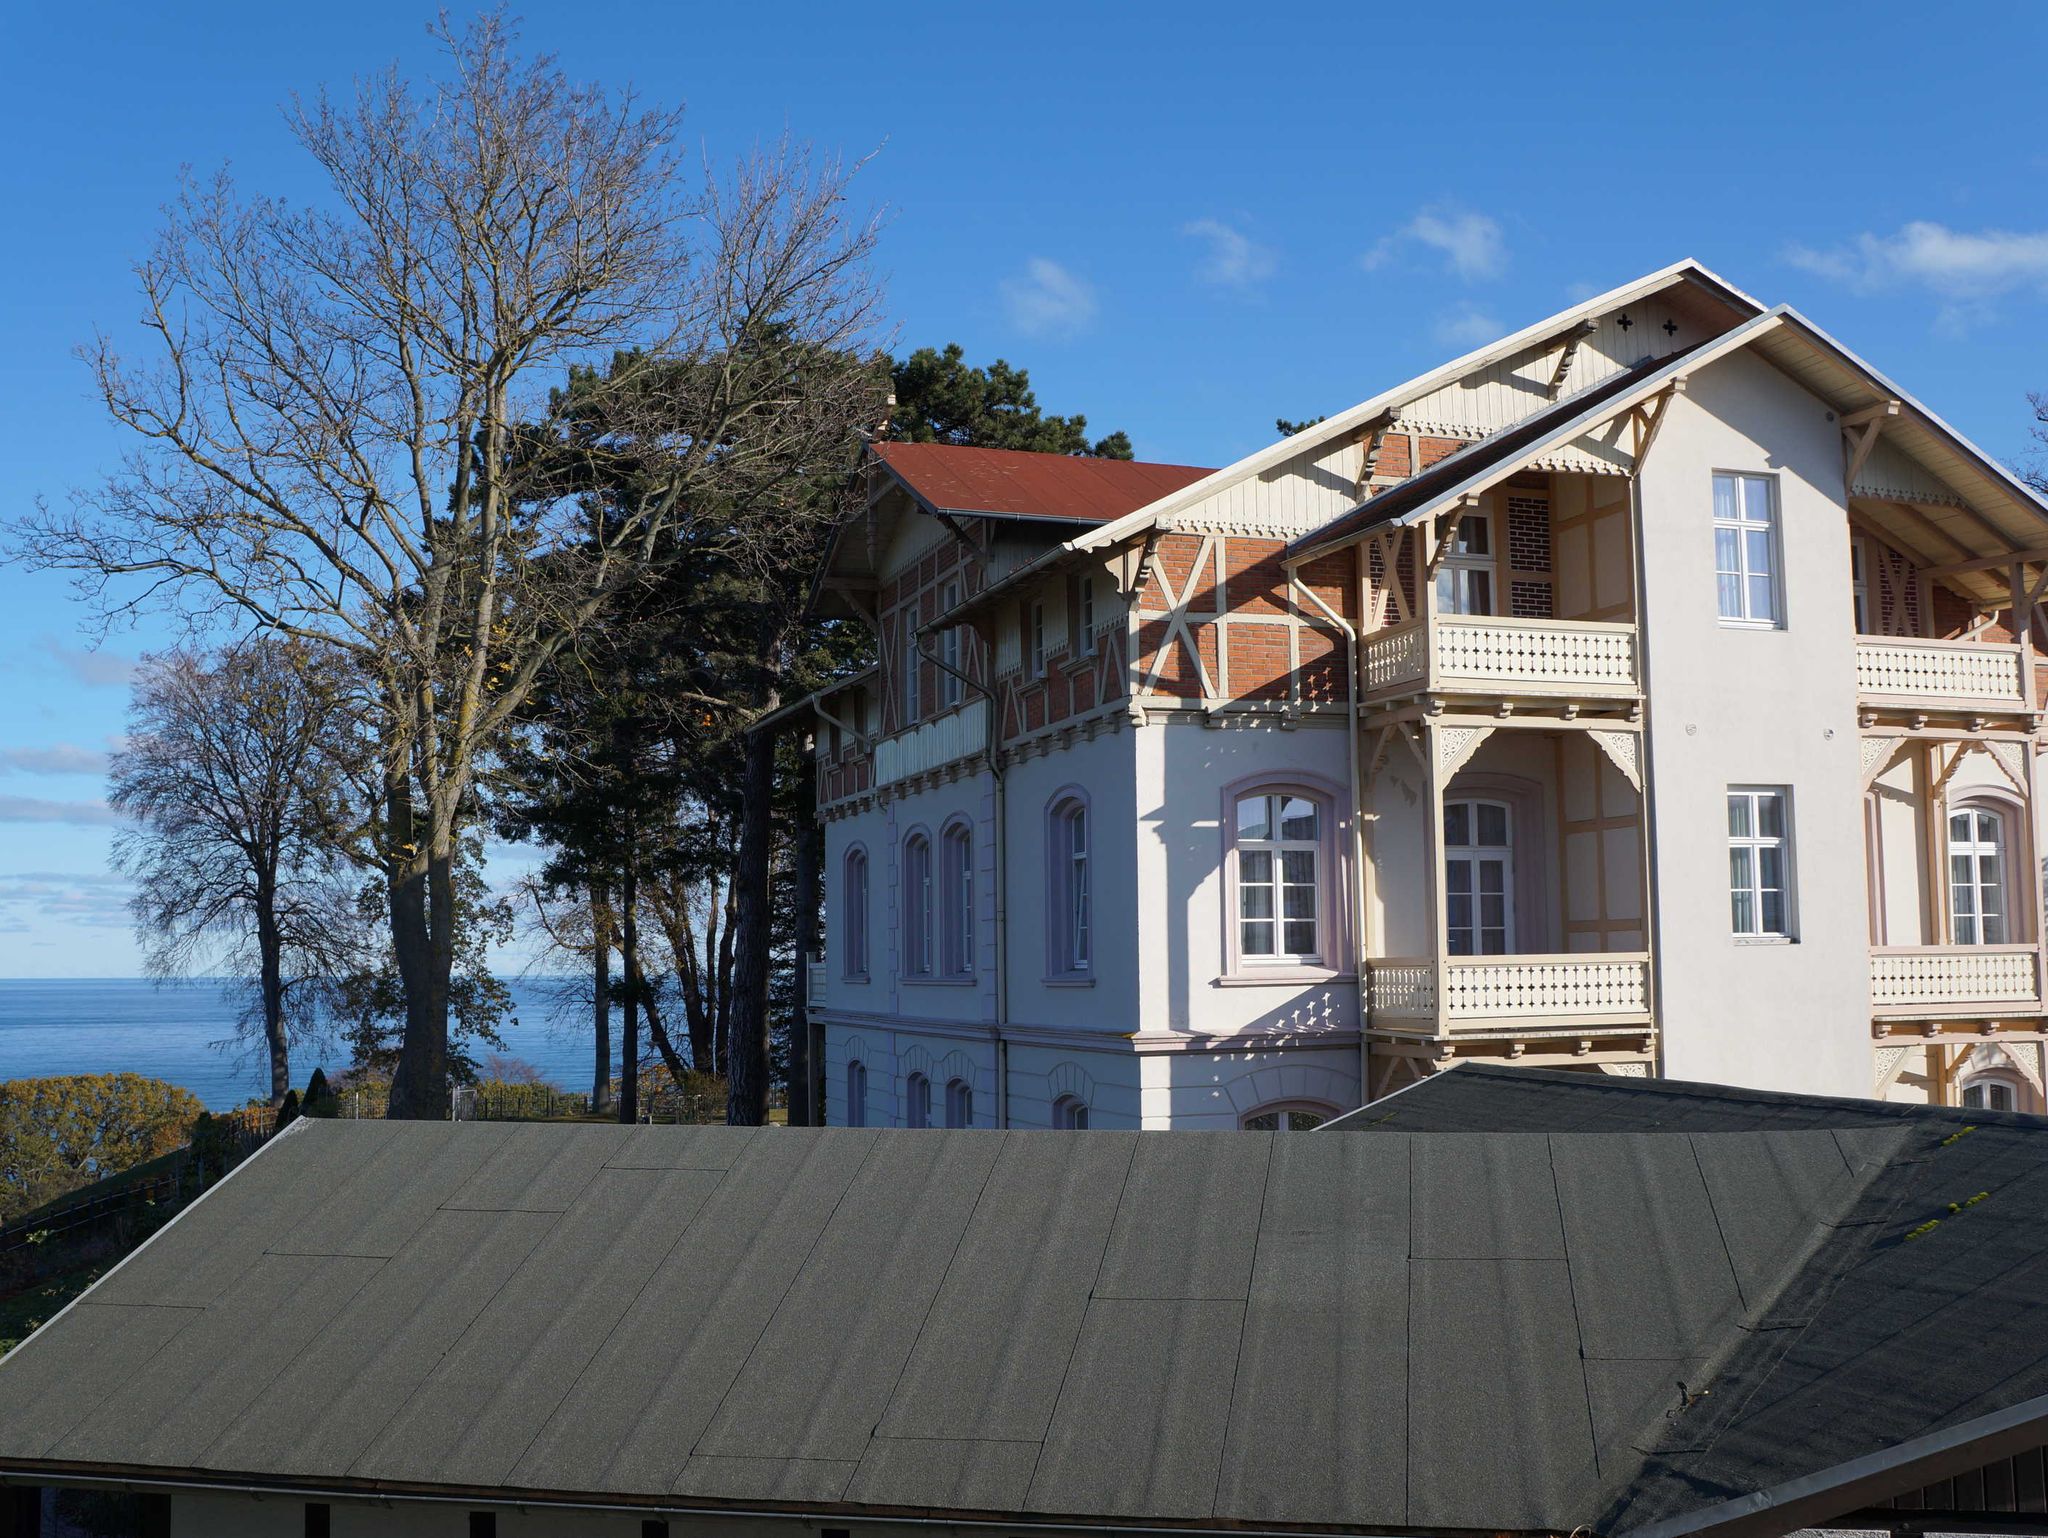 Villa Muschel - Blick vom Carport auf die Terrasse der Wohnung